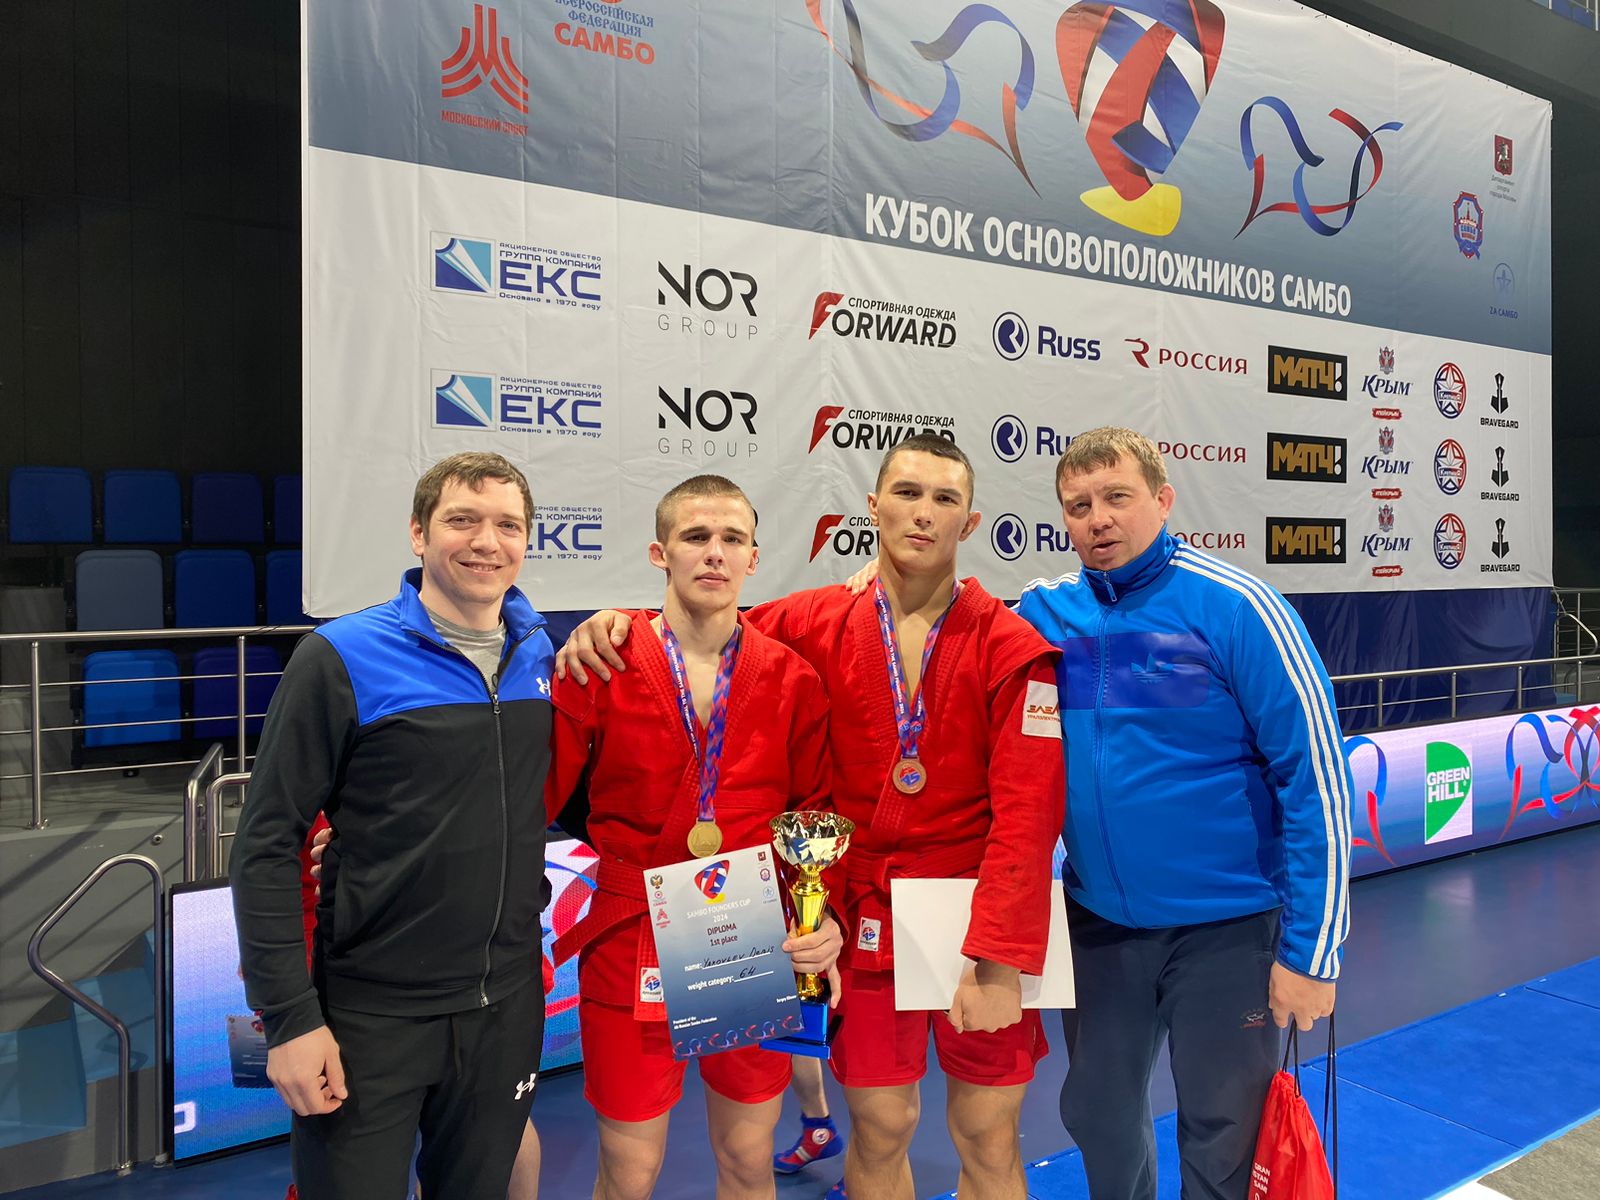 Спортсмены КС УГМК завоевали две медали на Кубке основоположников самбо в Москве